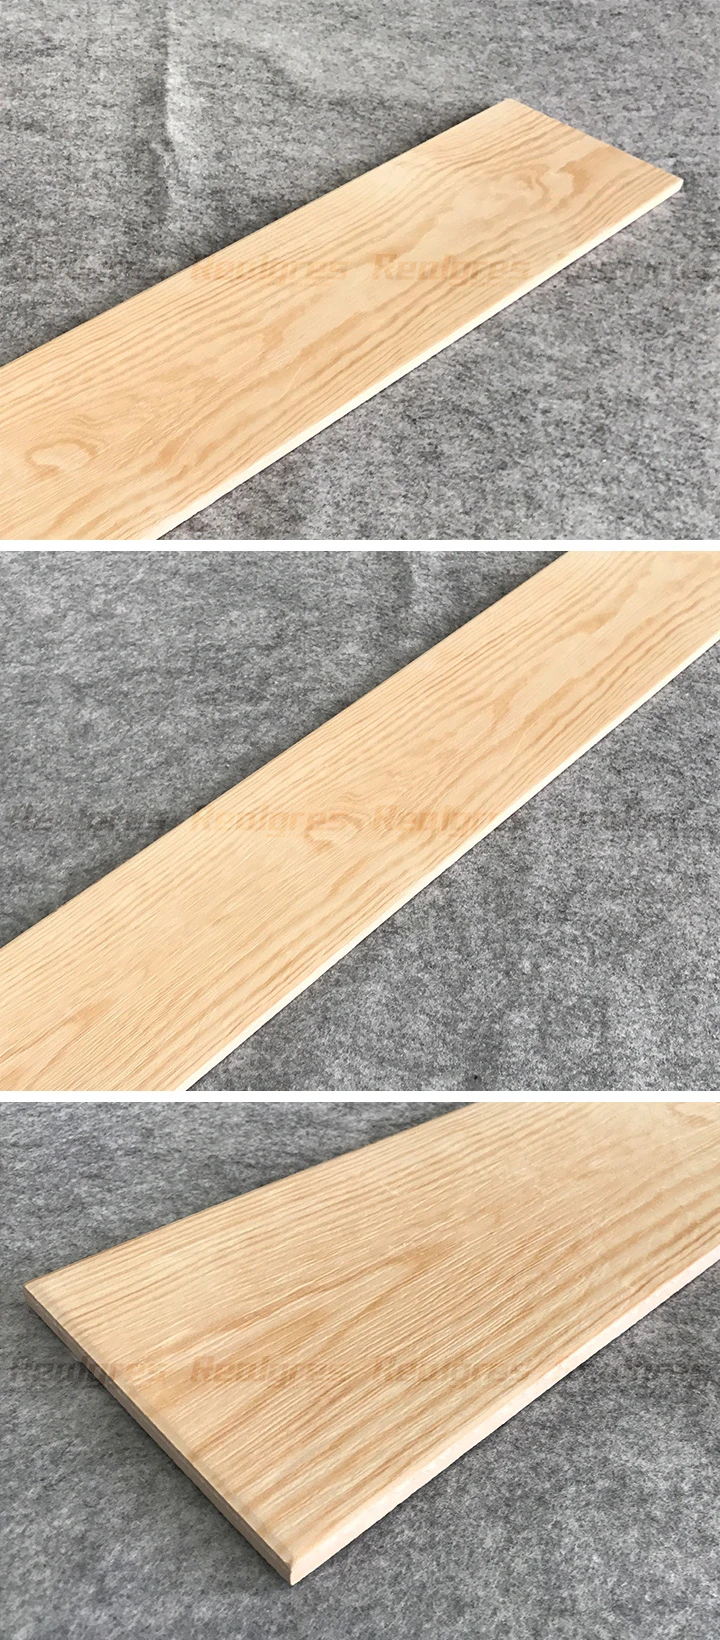 Lanka Wood Philippines Wooden Tiles Flooring Floor Tile Price In